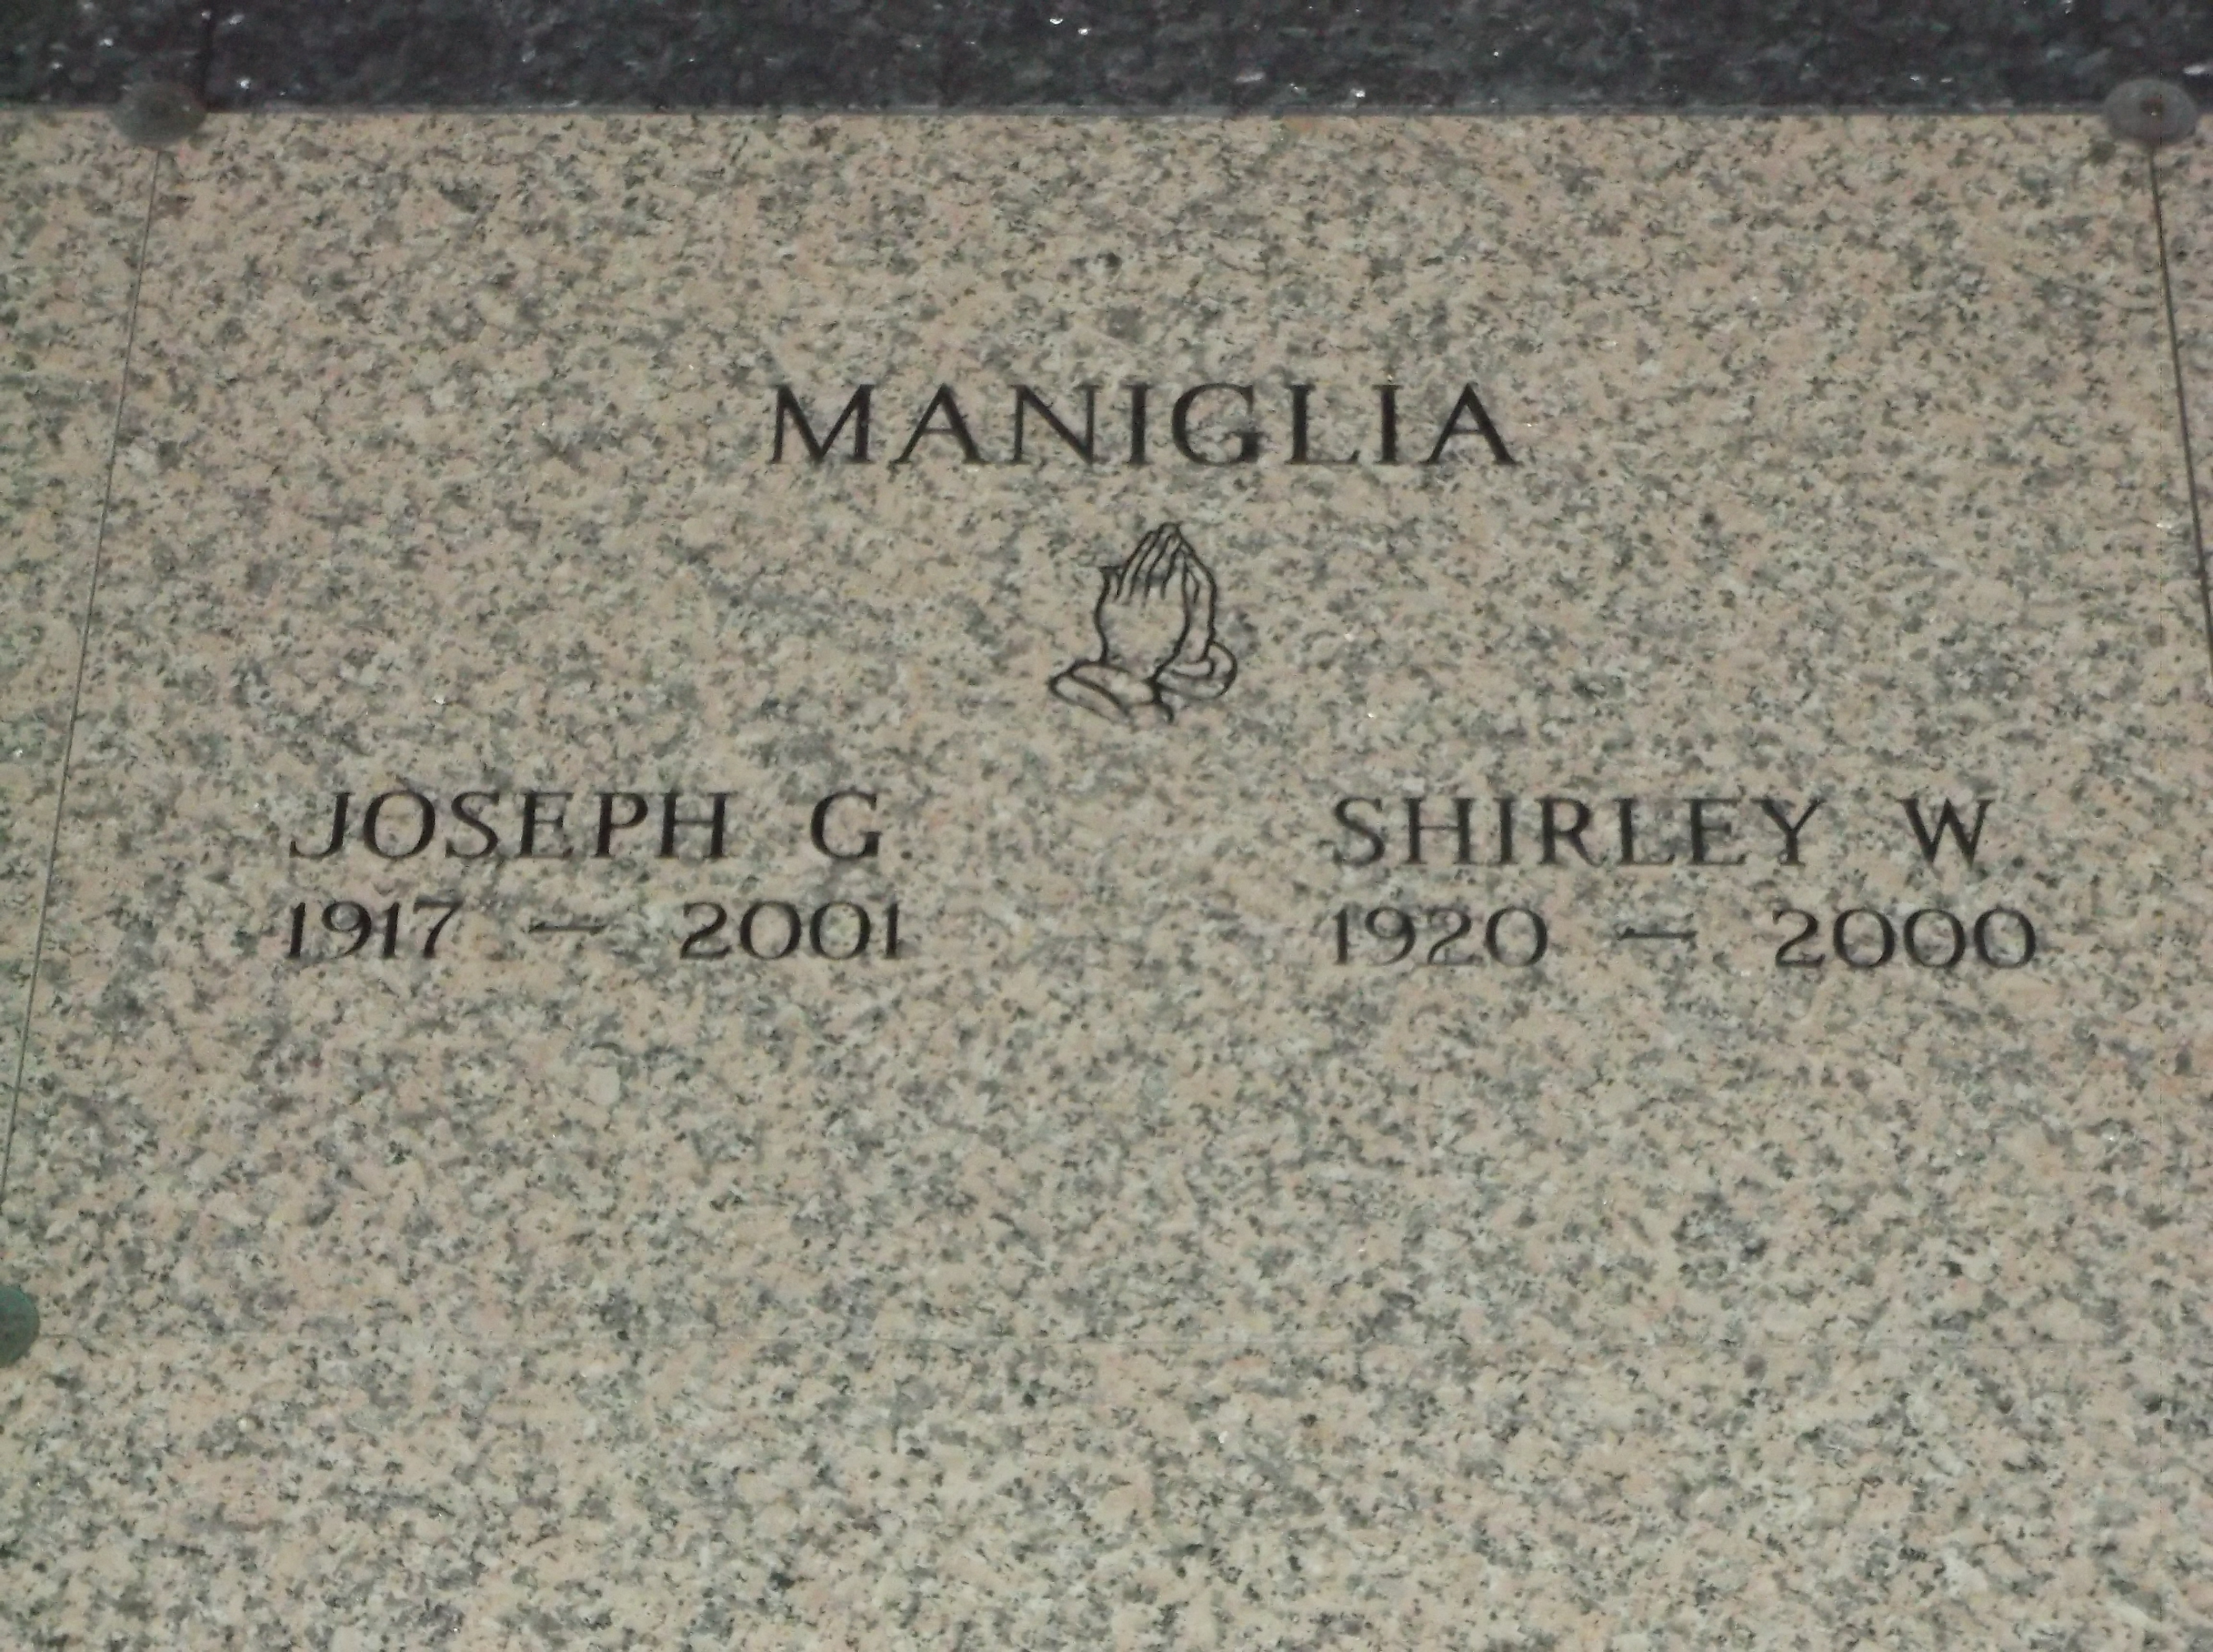 Shirley W Maniglia